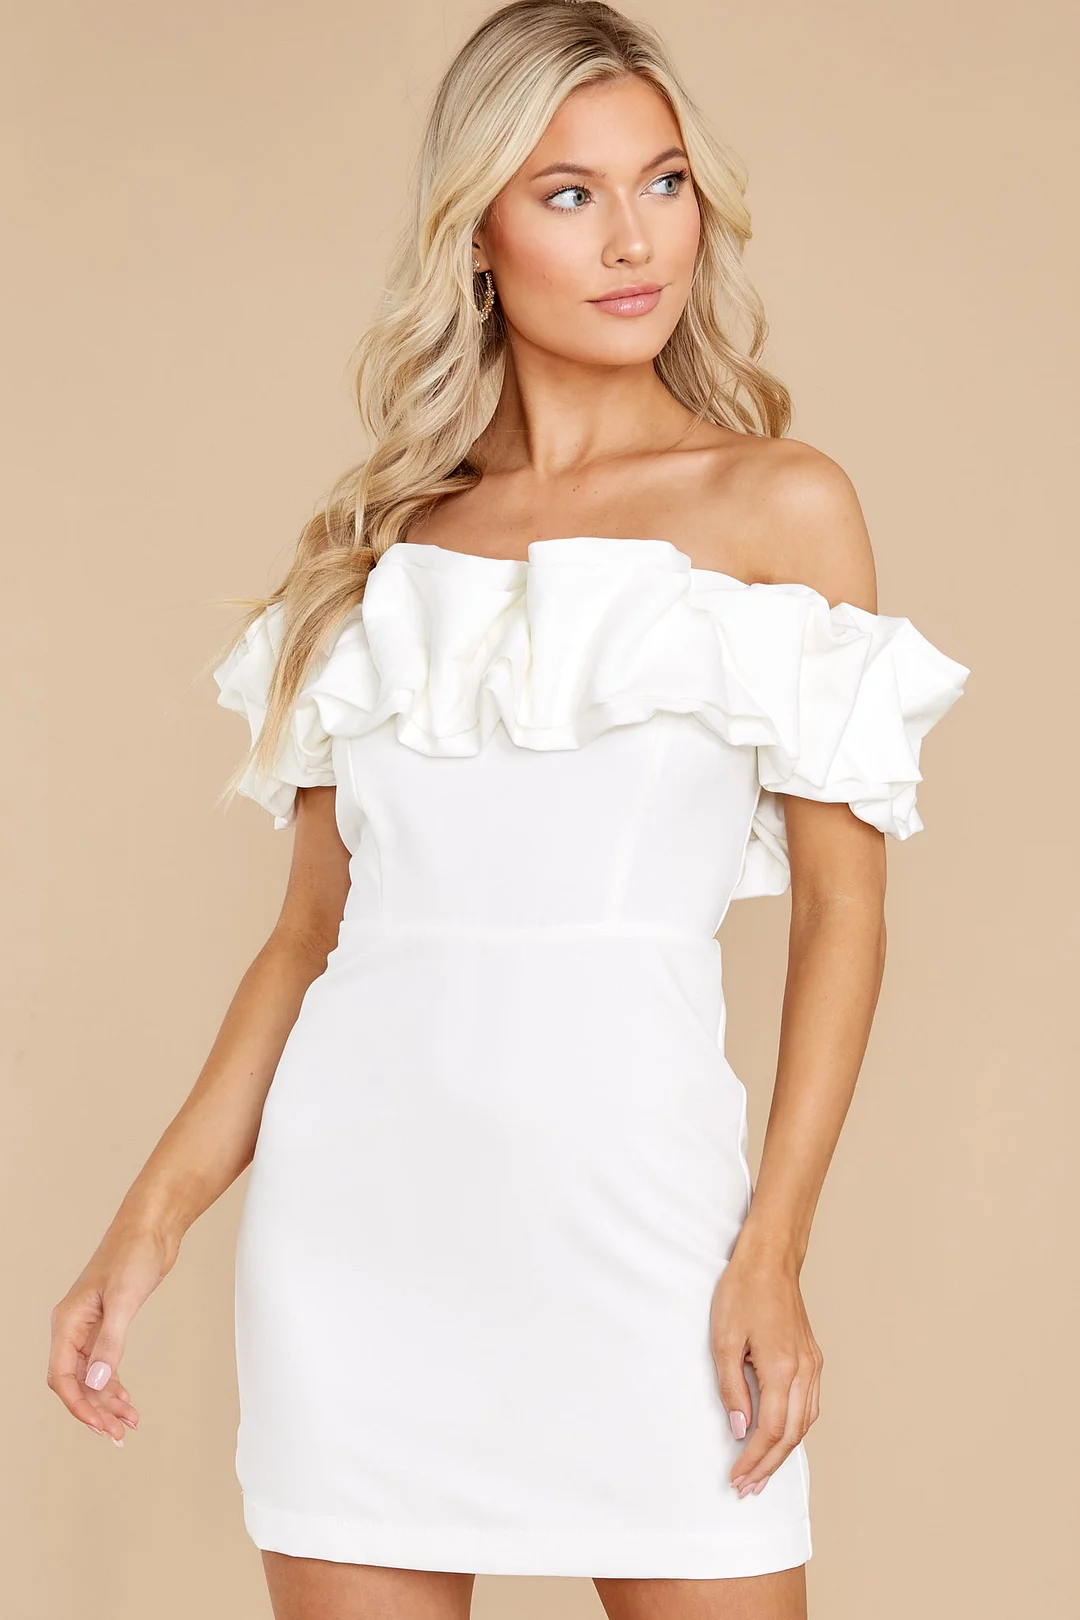 Elegant Sass White Dress